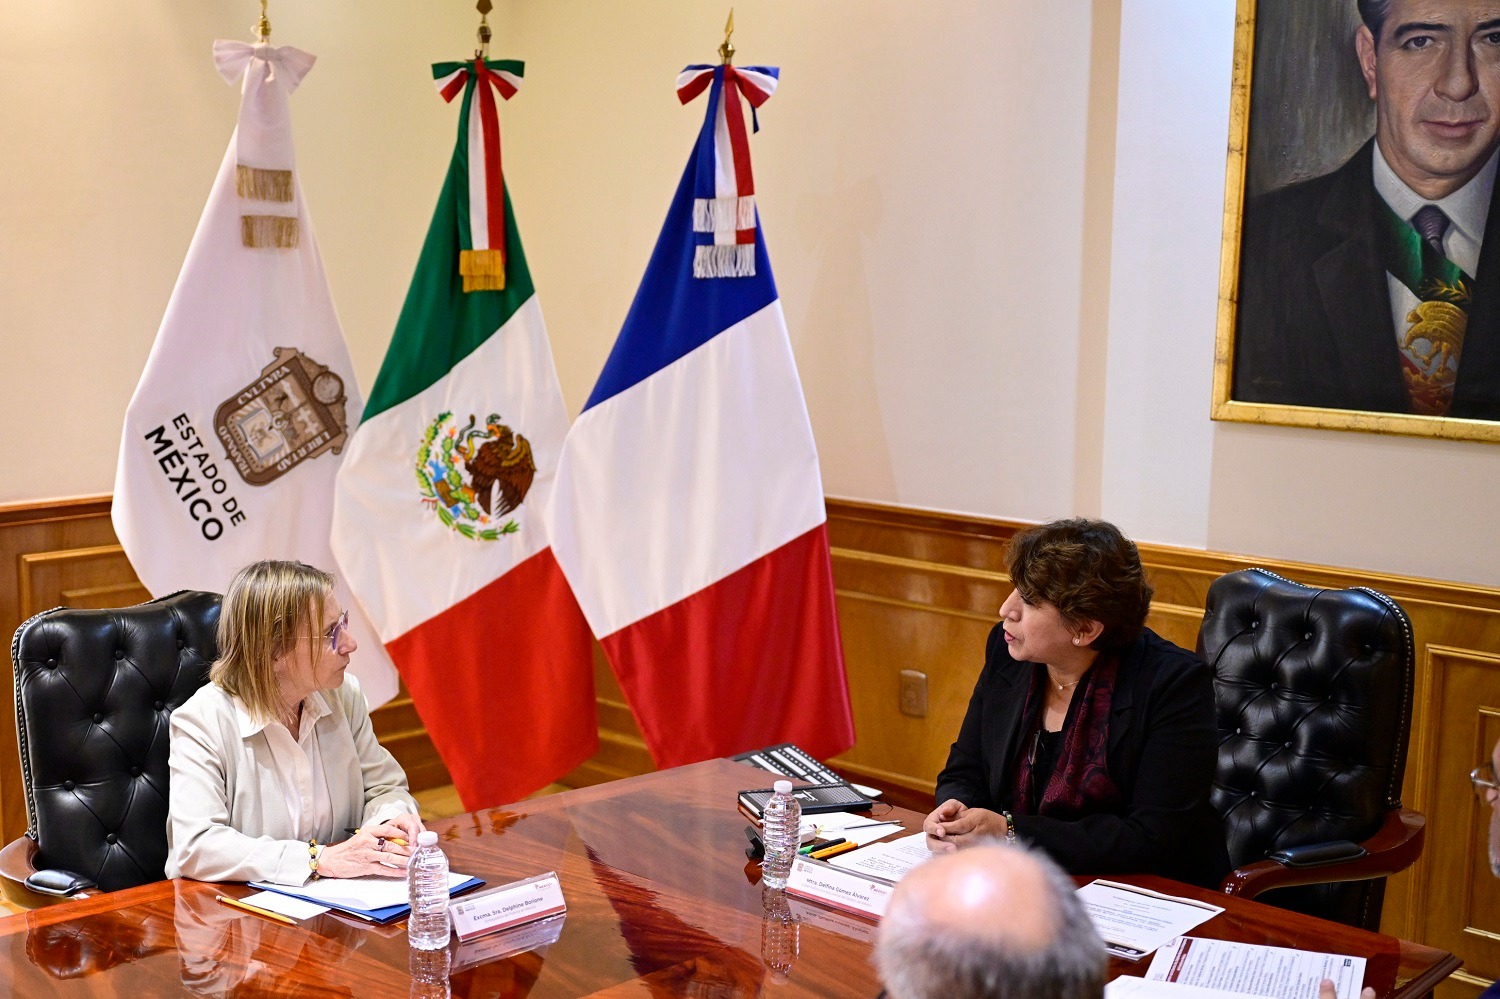 La gobernadora Delfina Gómez Álvarez indicó que este tipo de reuniones permiten al Gobierno mexiquense fortalecer sus relaciones bilaterales internacionales.